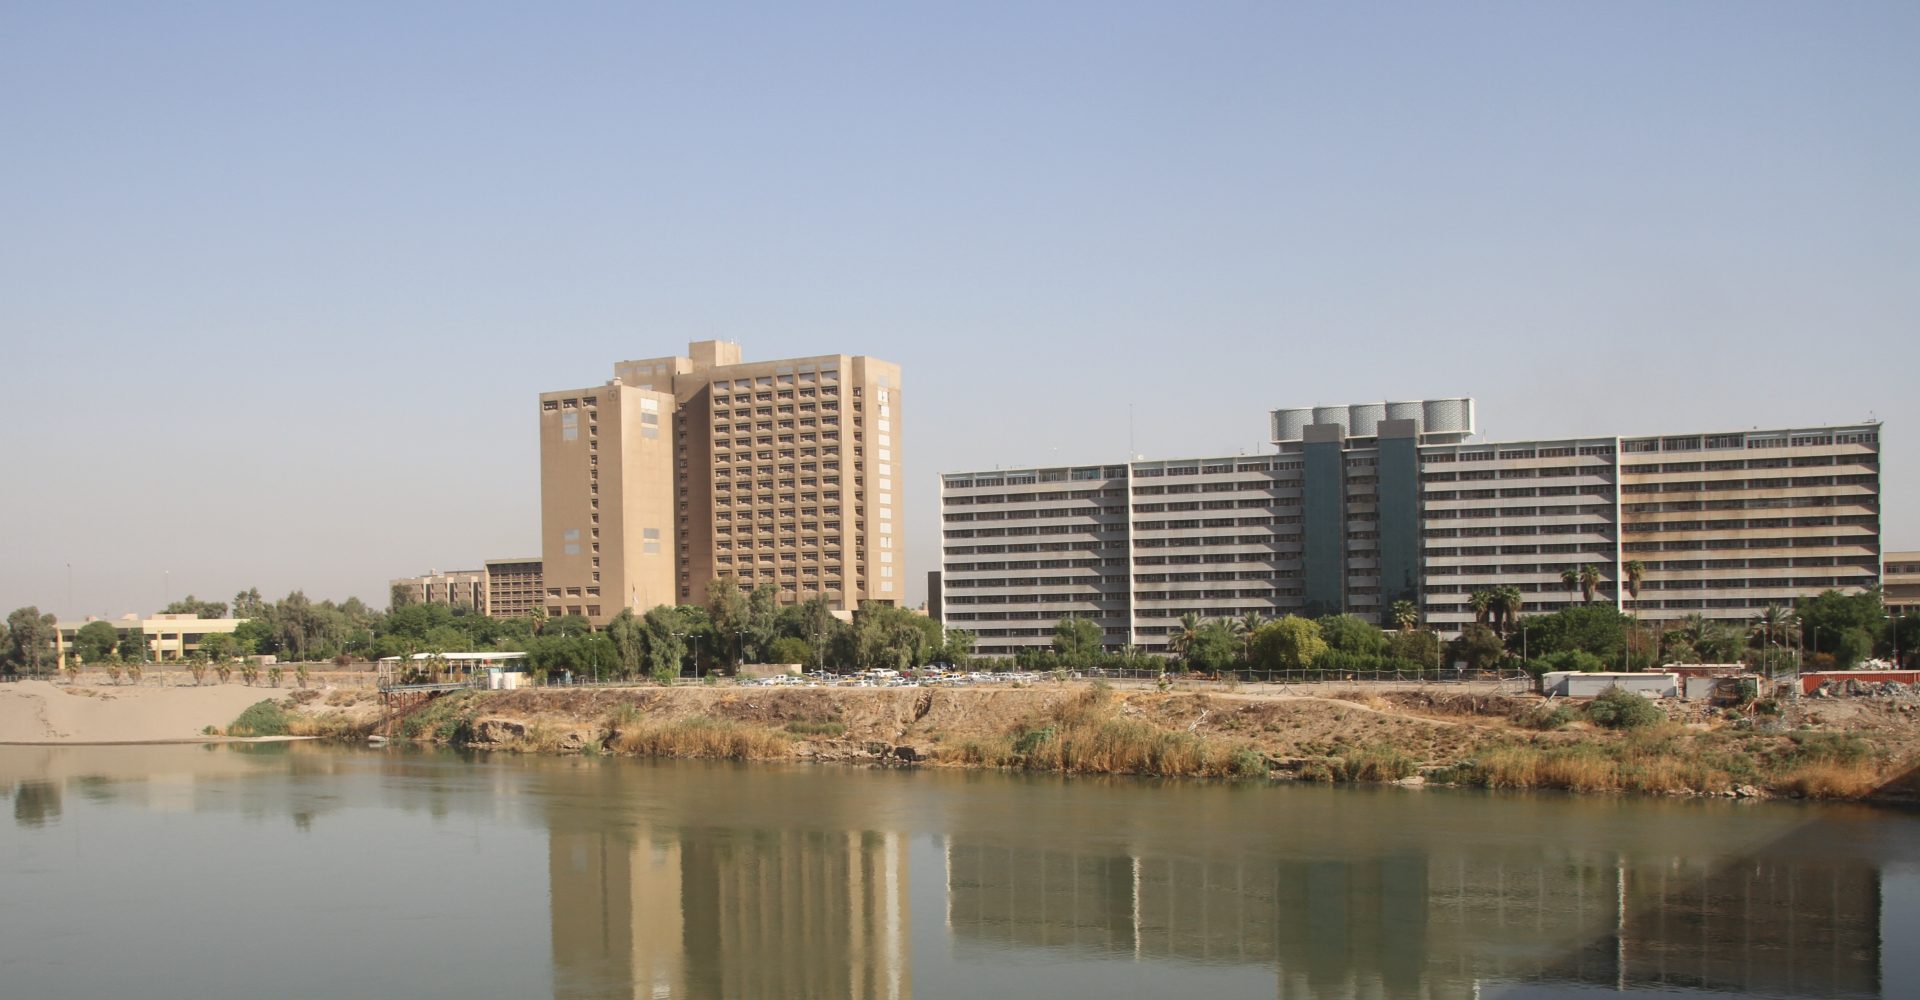 Fire breaks out inside a major hospital in Baghdad 